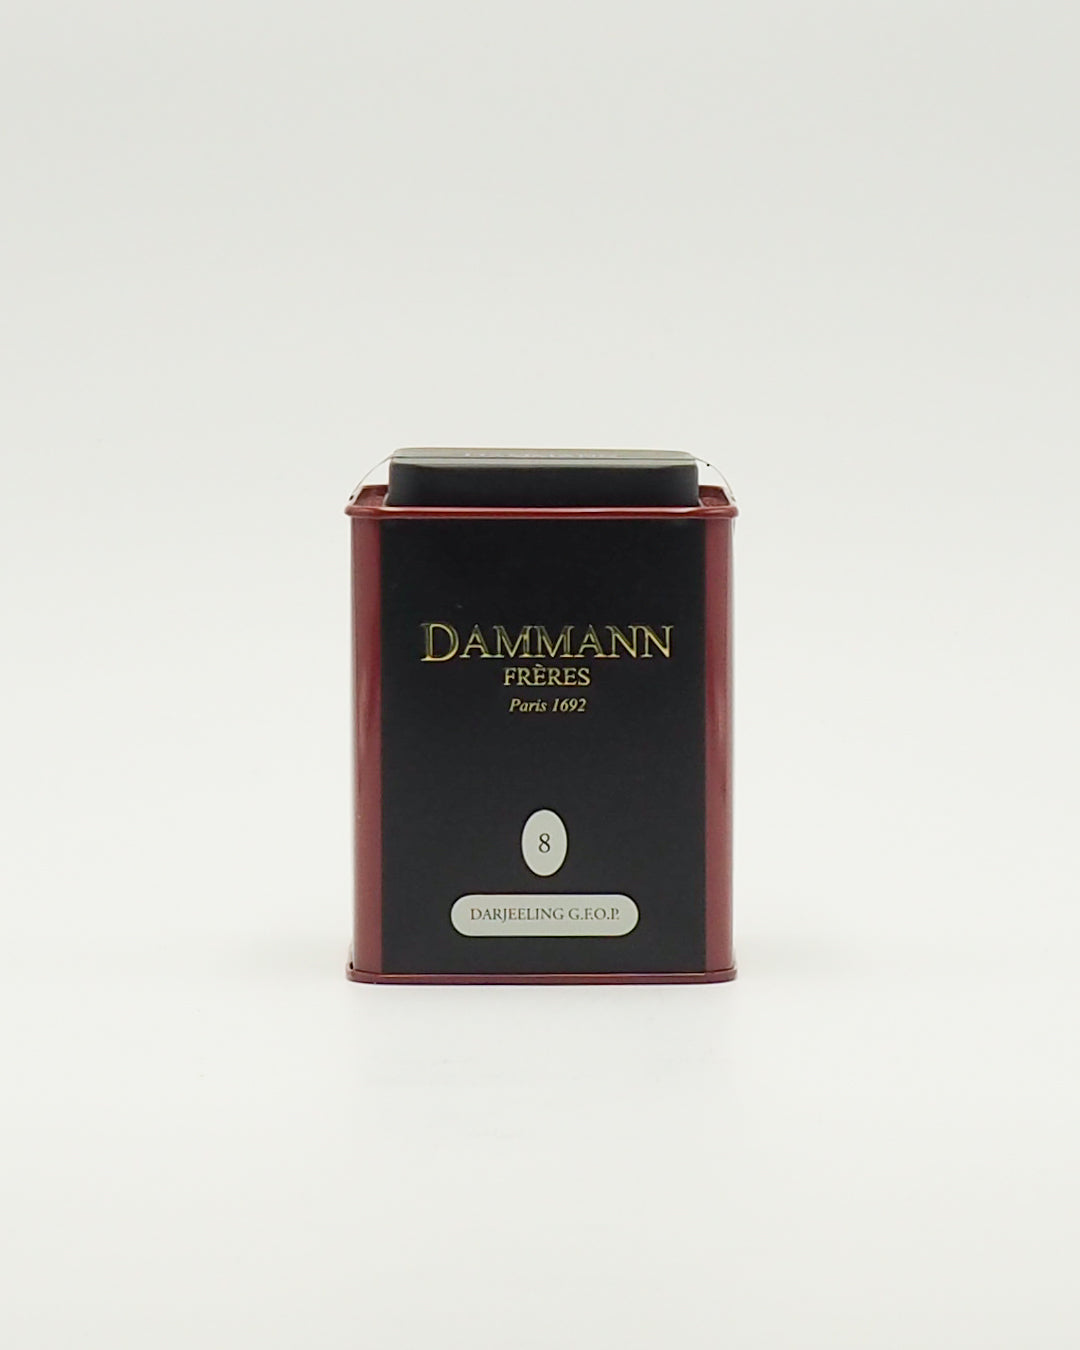 Tè Darjeeling G.F.O.P. Dammann